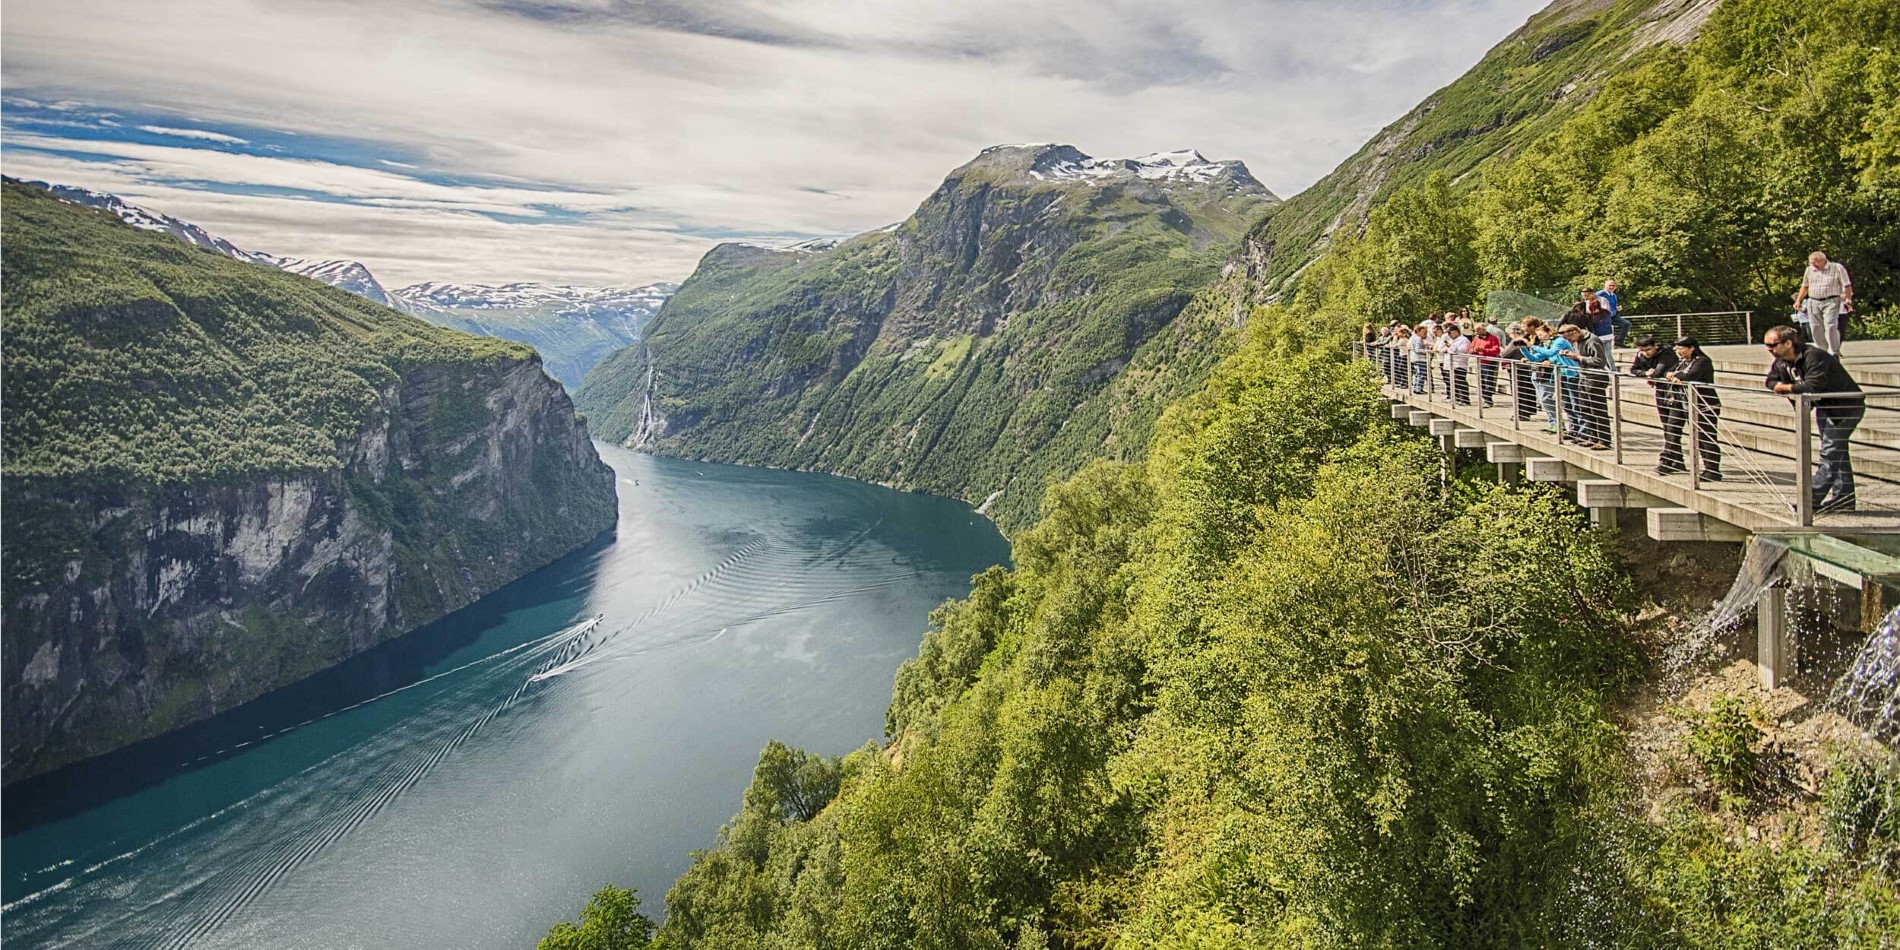 Segeln Sie mit Hurtigruten in den Sommermonaten (Jun-Aug) und erleben Sie den atemberaubenden Geirangerfjord hautnah.